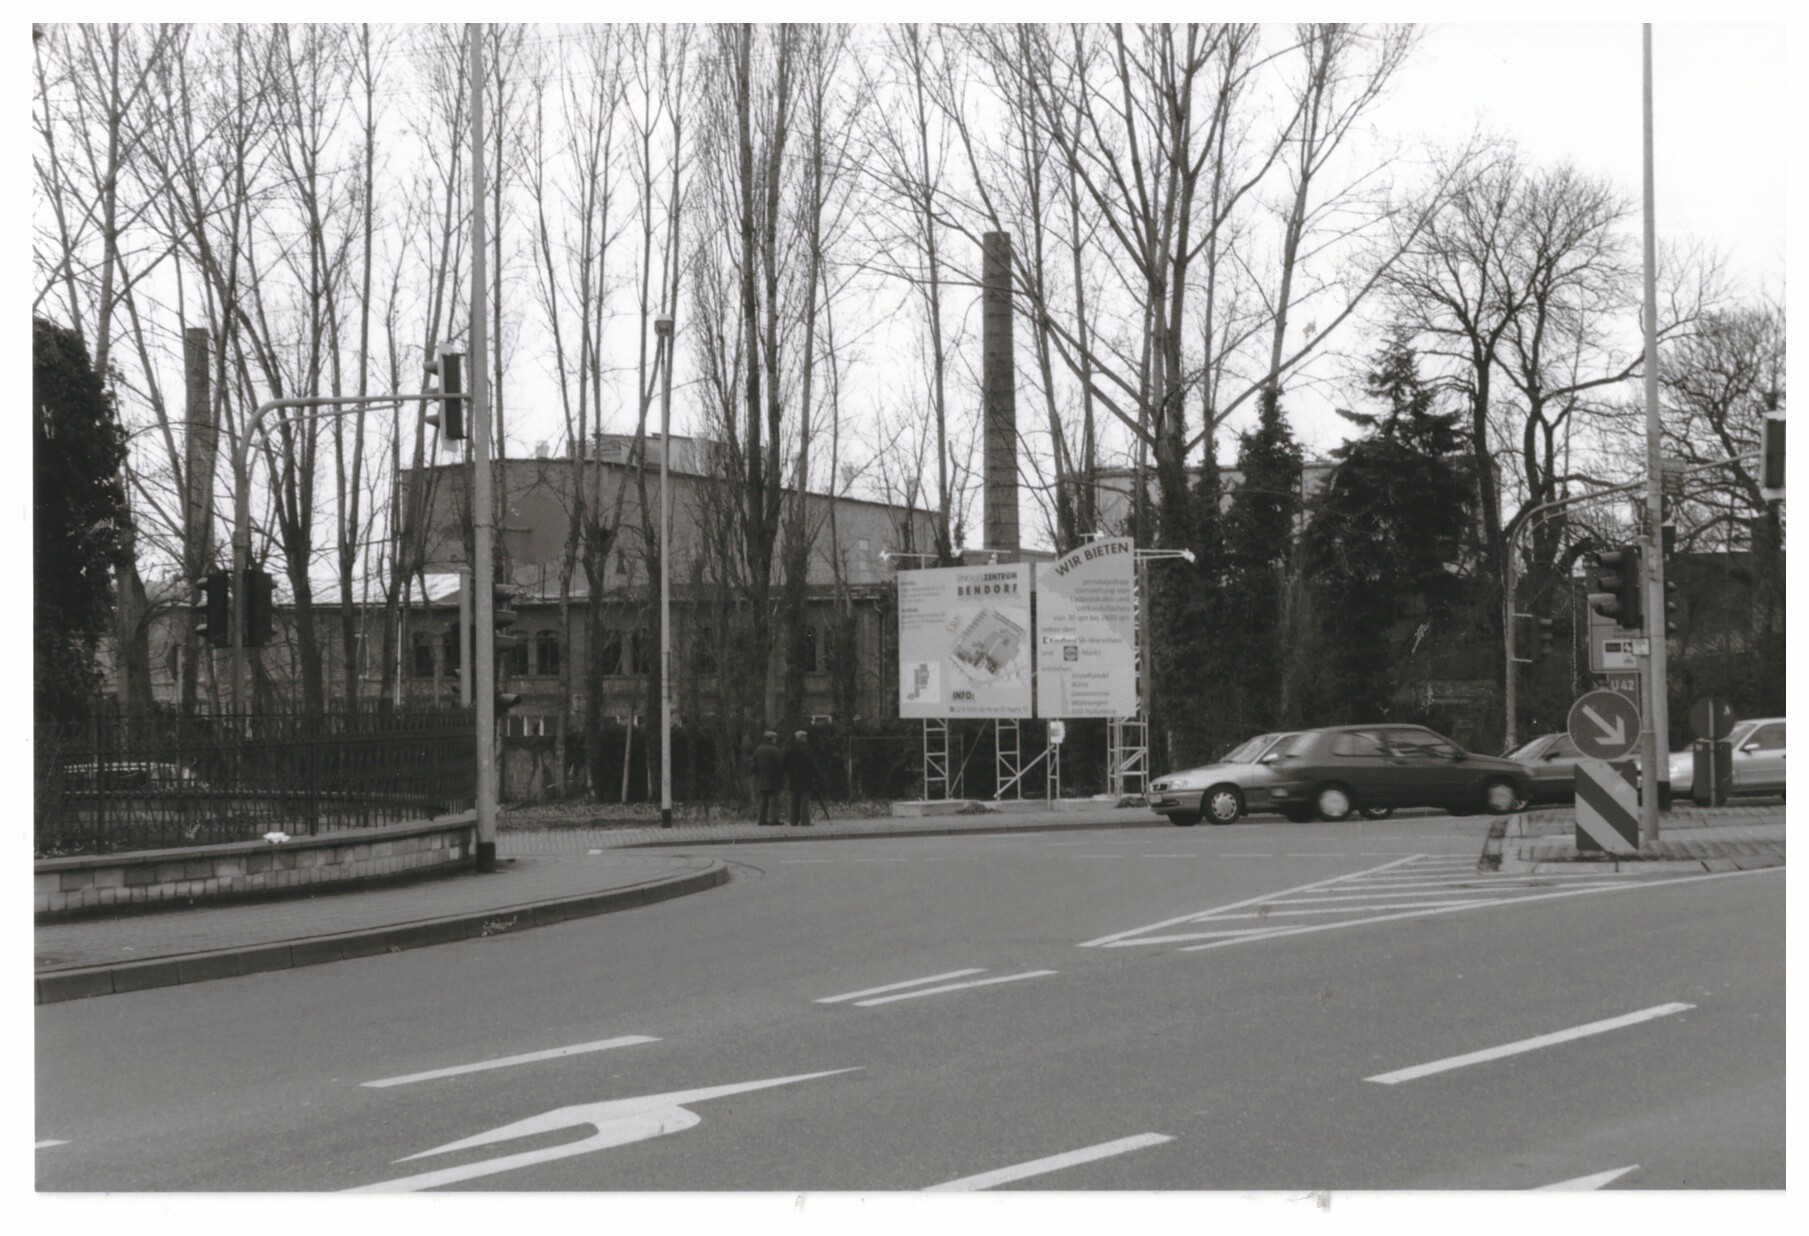 Kreuzung vor dem Werksgelände Didier vor dem Abriss 1998/99, Bendorf (Stiftung Sayner Hütte, Rheinisches Eisenkunstguss-Museum CC BY-NC-SA)